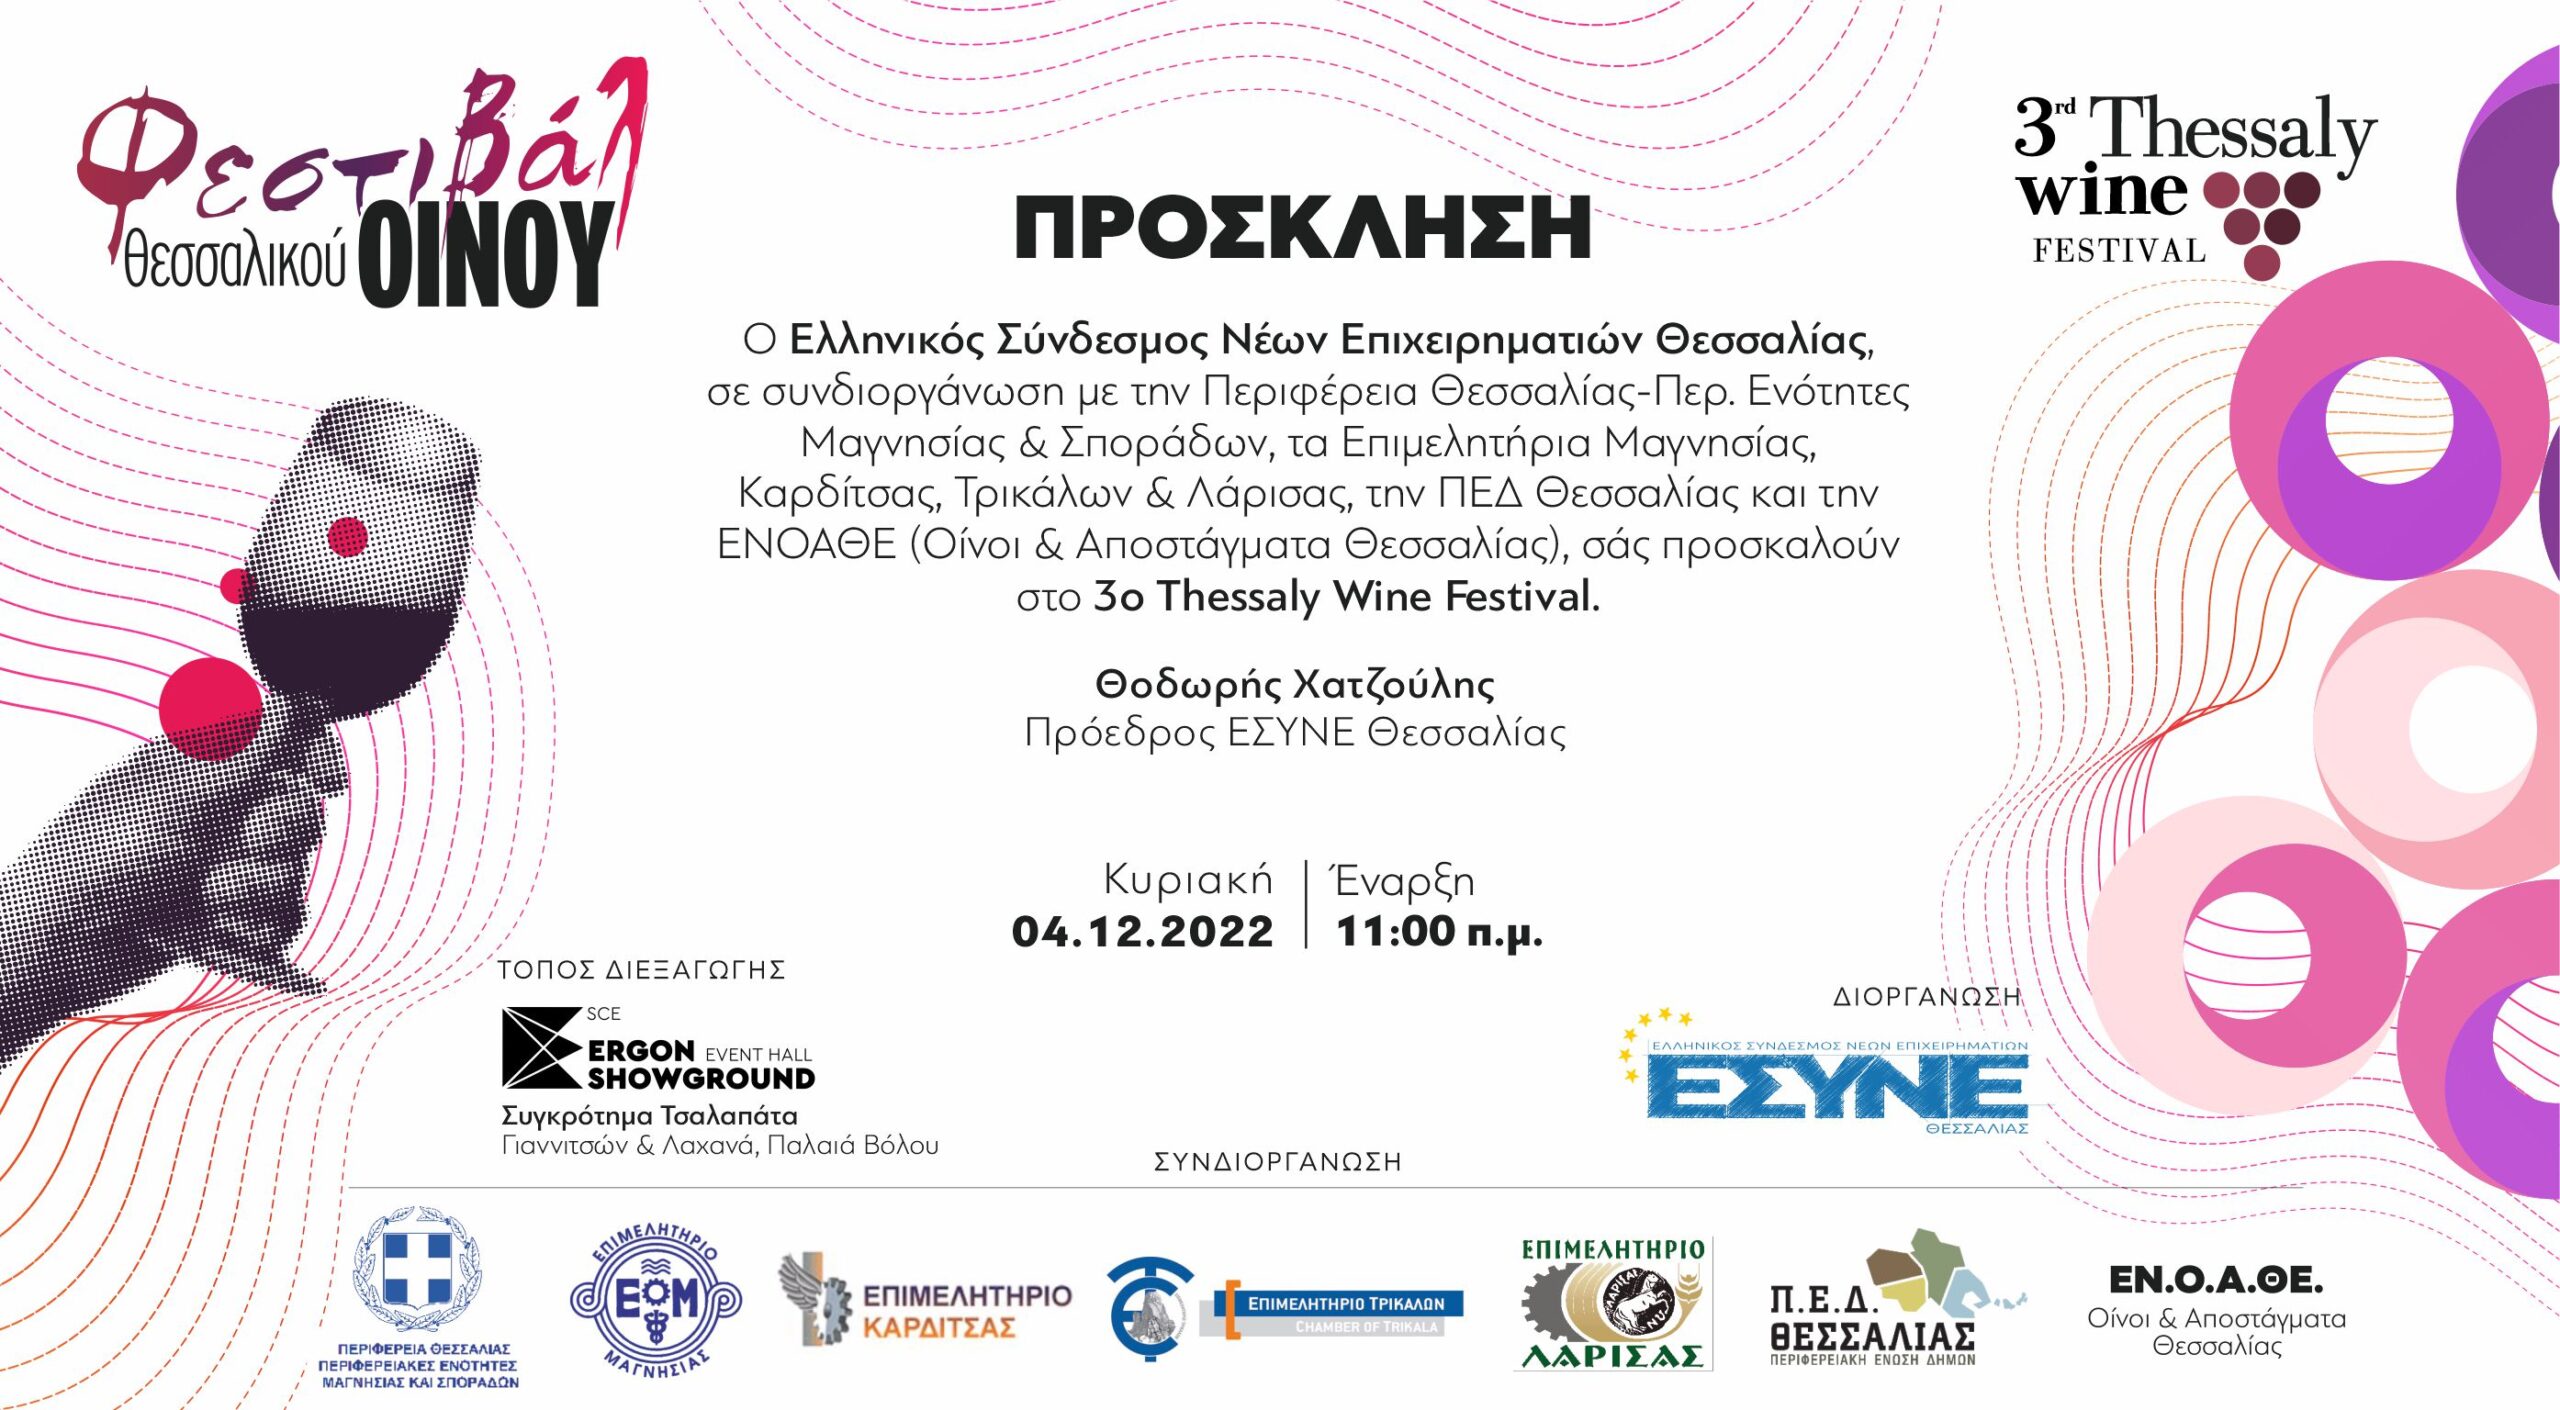 Ο Ελληνικός Σύνδεσμος Νέων Επιχειρηματιών ΕΣΥΝΕ Θεσσαλίας, ανακοινώνει τη διοργάνωση του 3ουThessaly Wine Festival